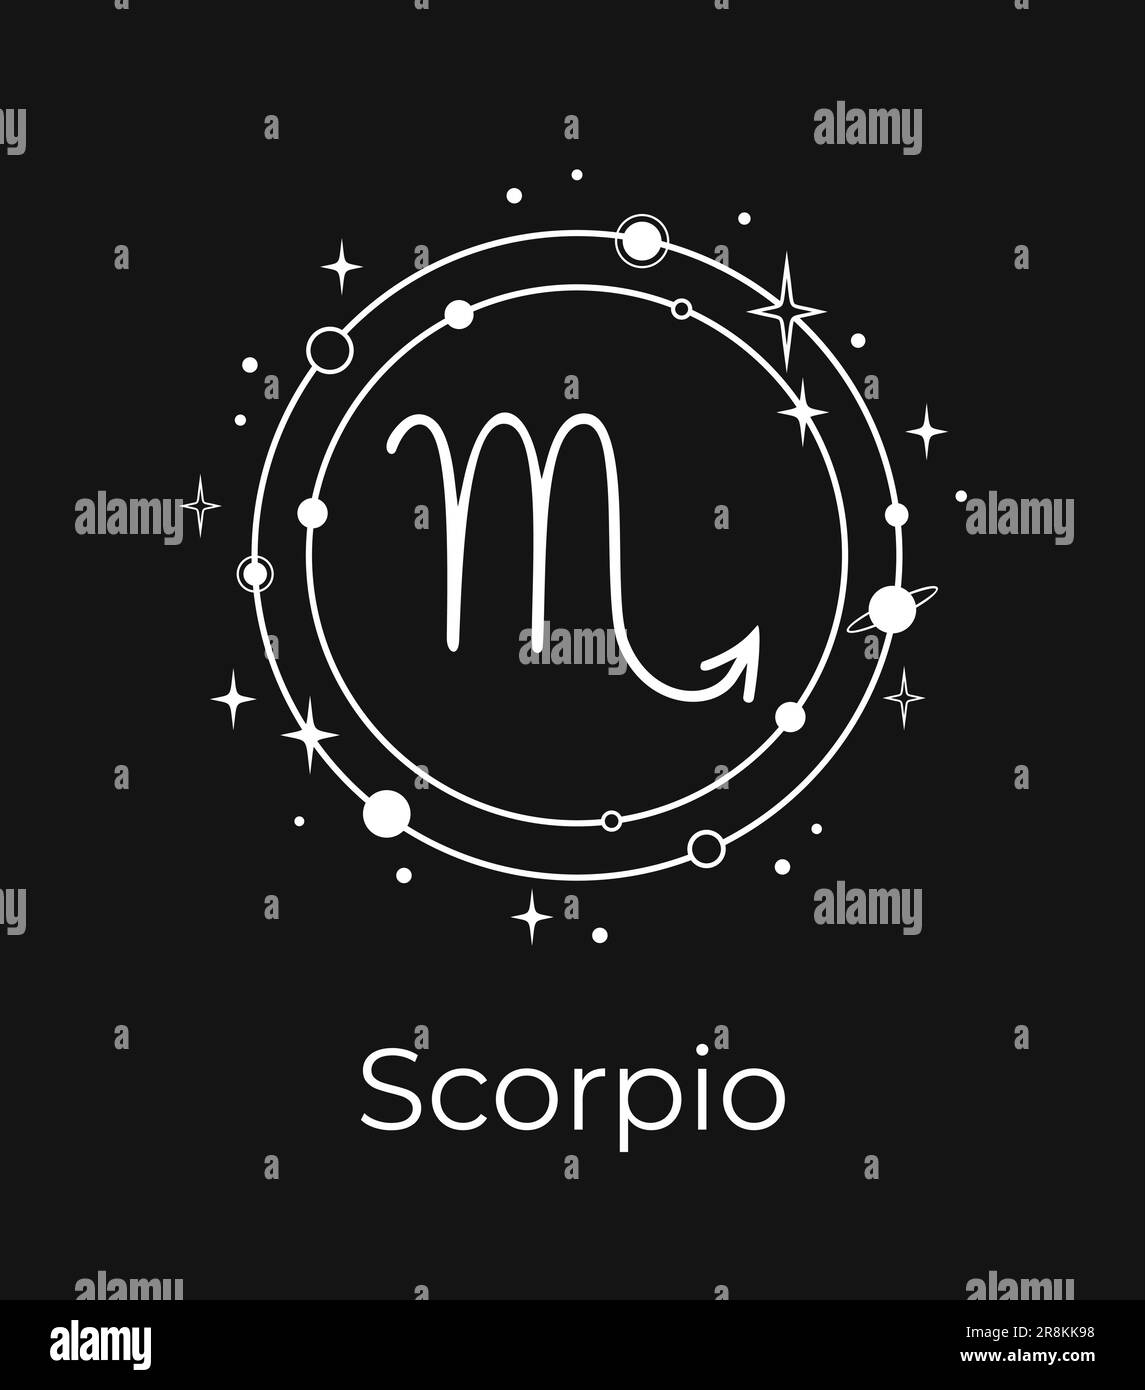 Weißes Scorpio-Schild mit Planeten und Sternen auf schwarzem Hintergrund Stock Vektor